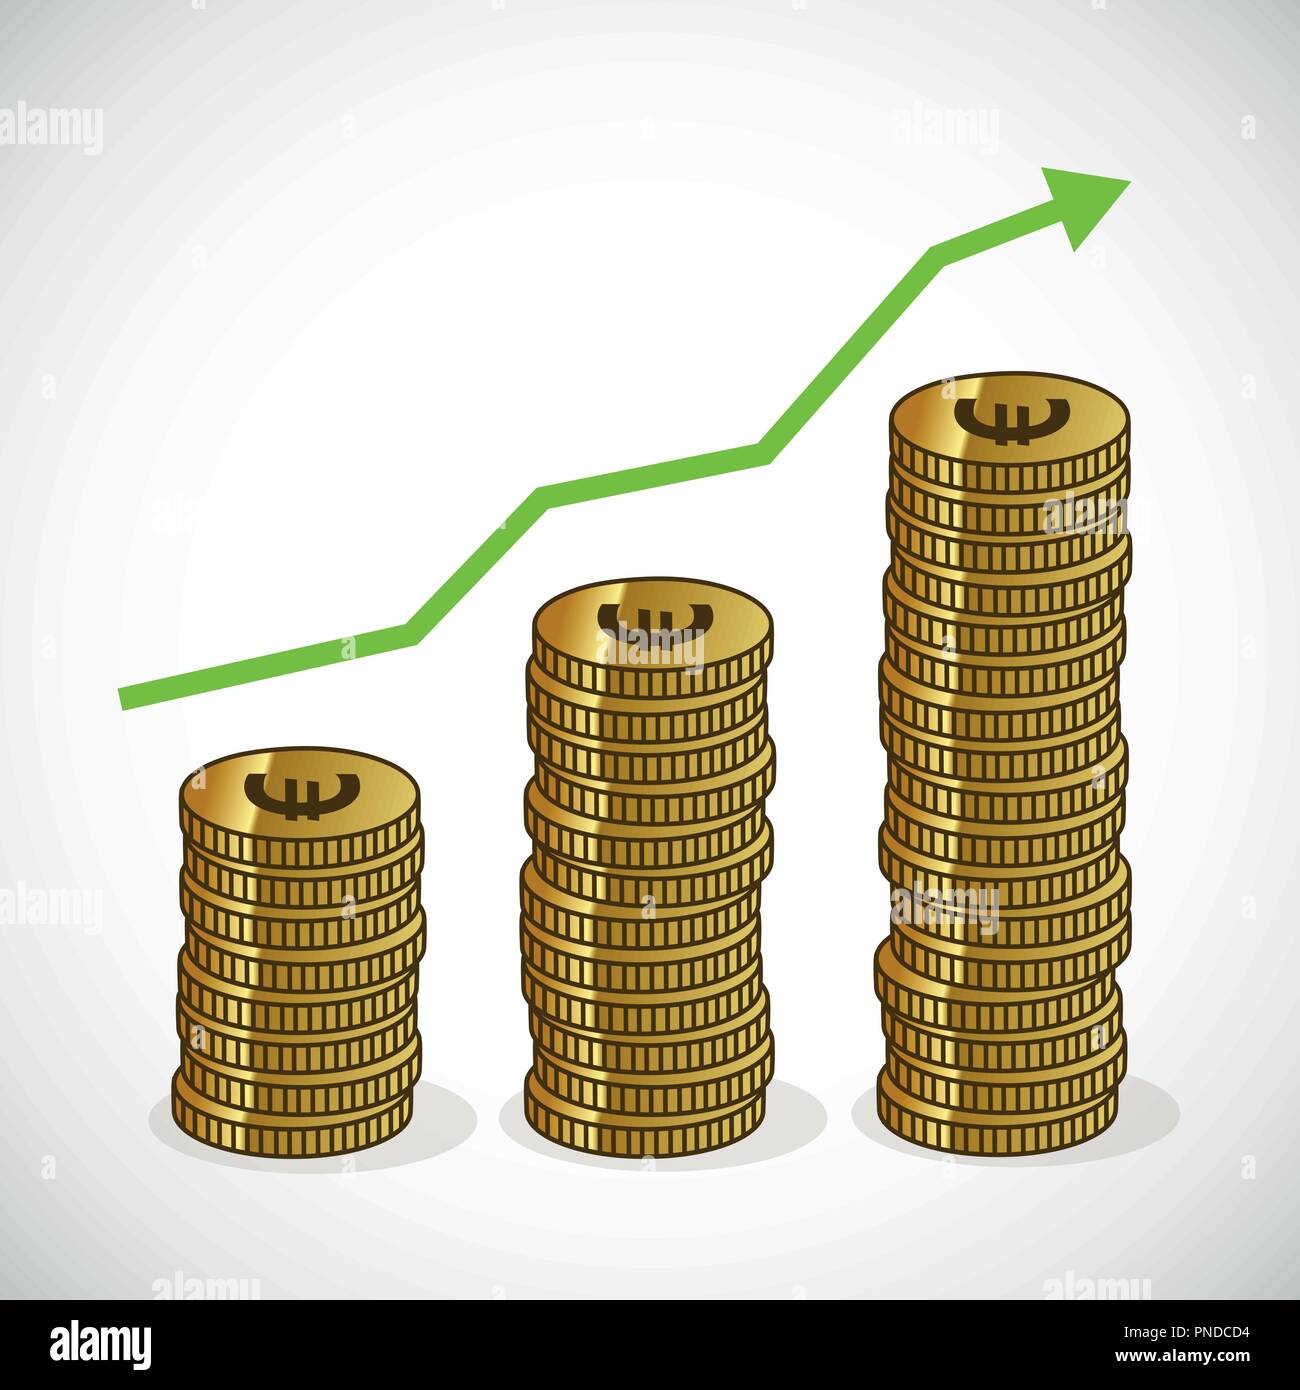 Umsatzwachstum zunehmende Grafik geld Trenddarstellung Symbol Vektor EPS Abbildung 10 Stock Vektor